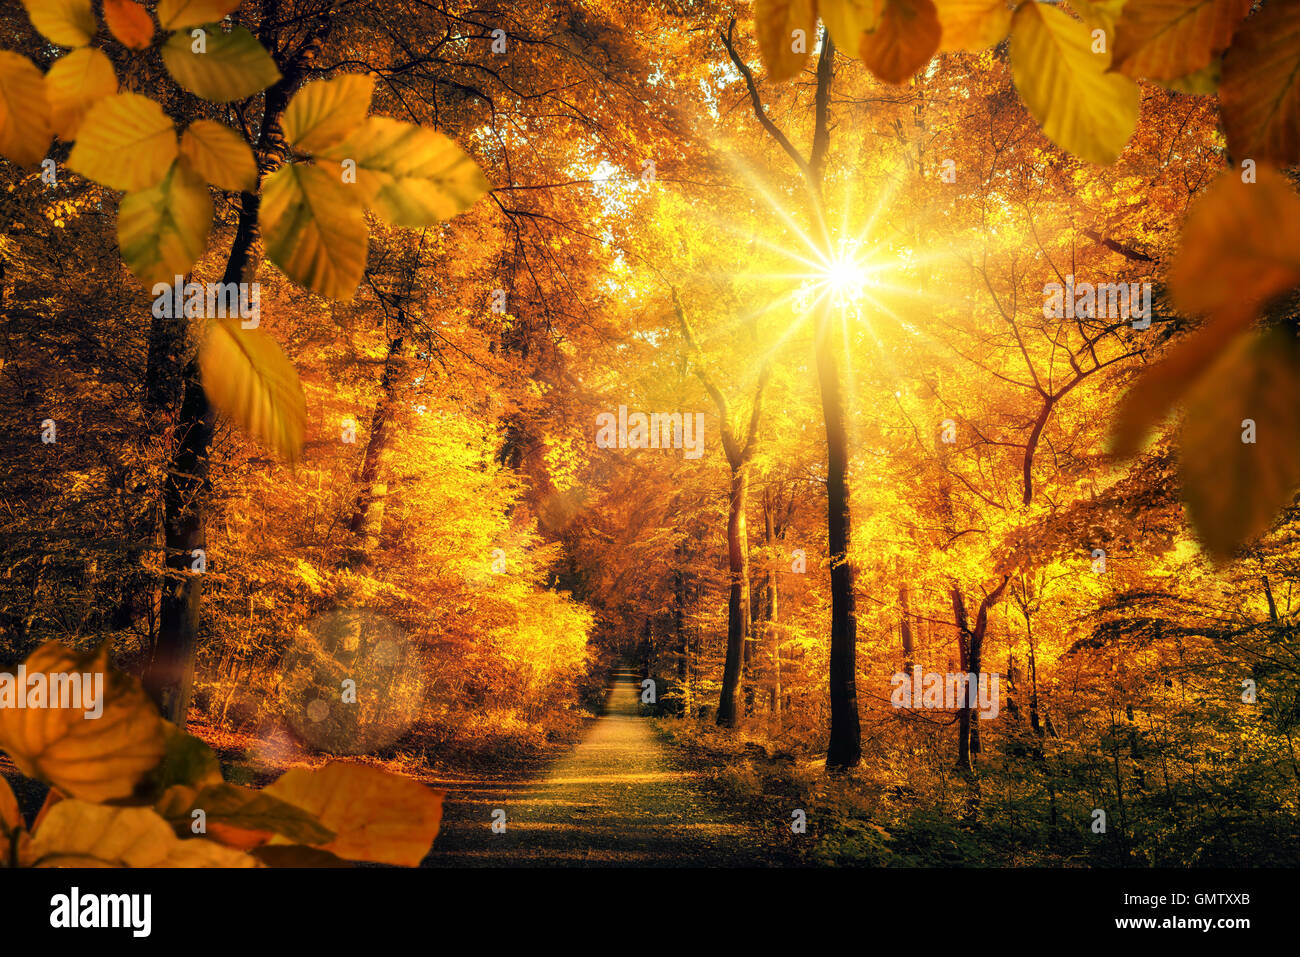 Décor de l'automne d'or dans une forêt, avec le soleil casting beaux rayons de lumière à travers le feuillage à un sentier Banque D'Images